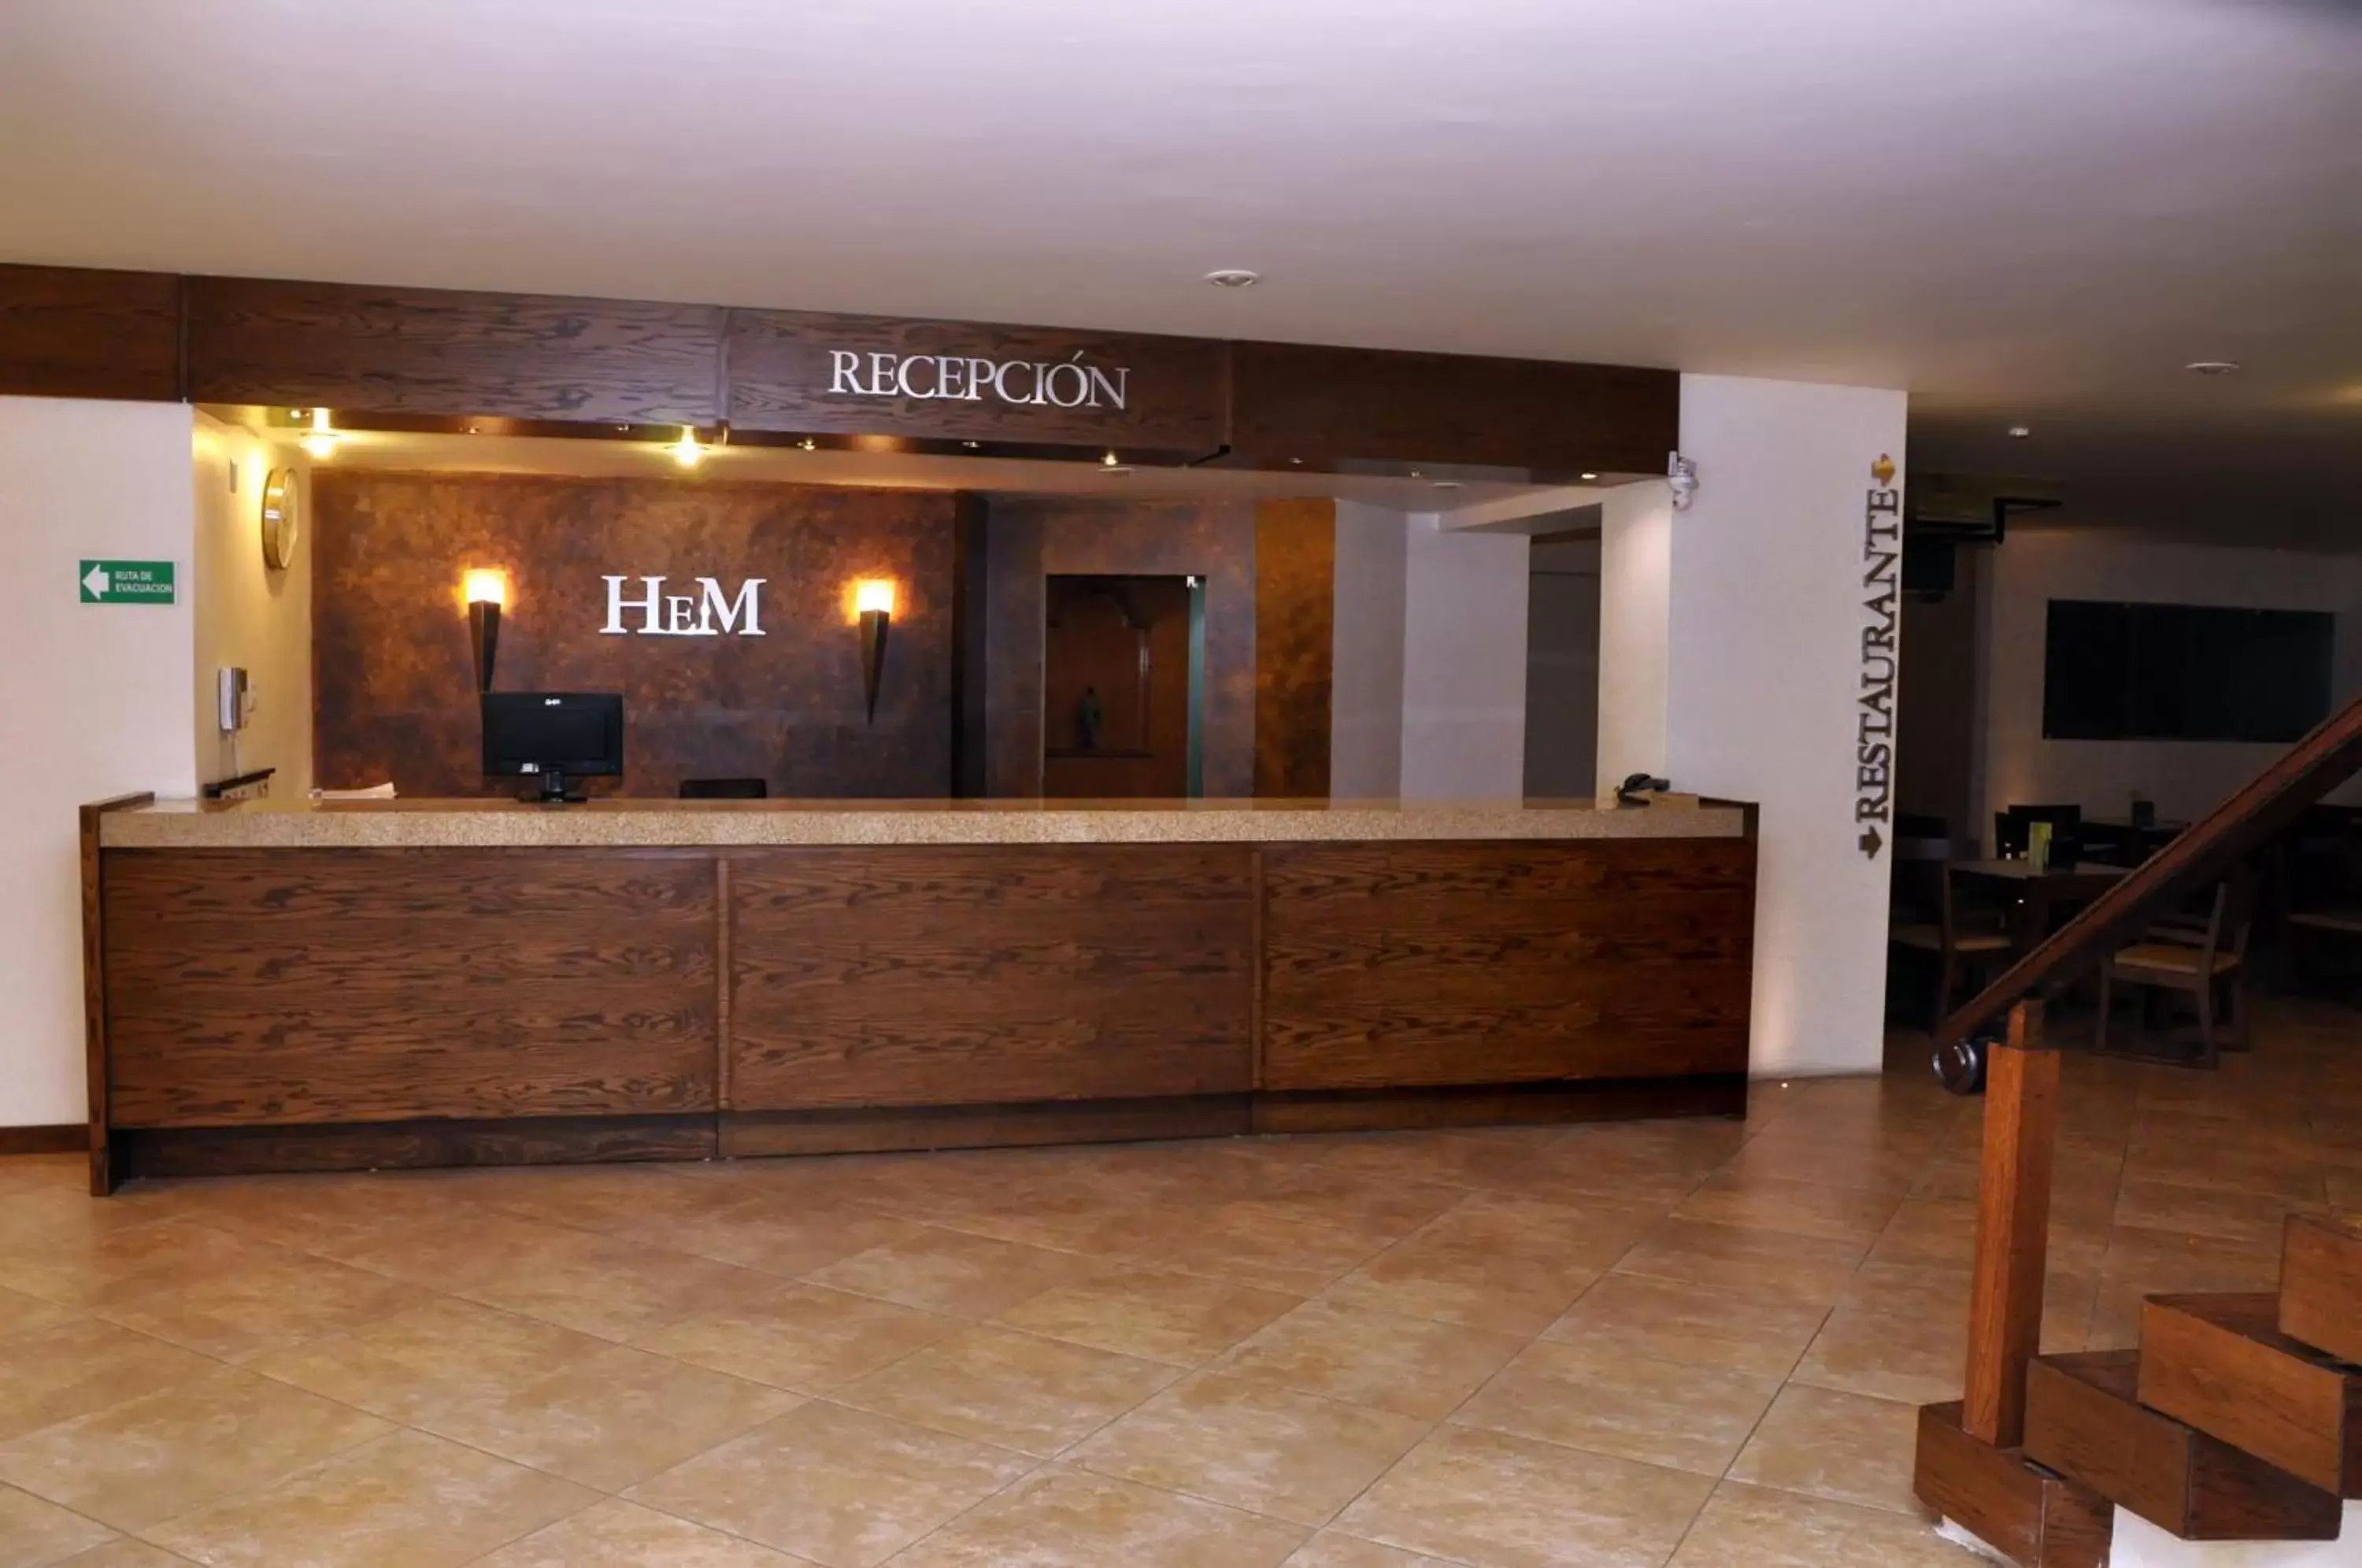 Lobby or reception, Lobby/Reception in Hotel El Monte